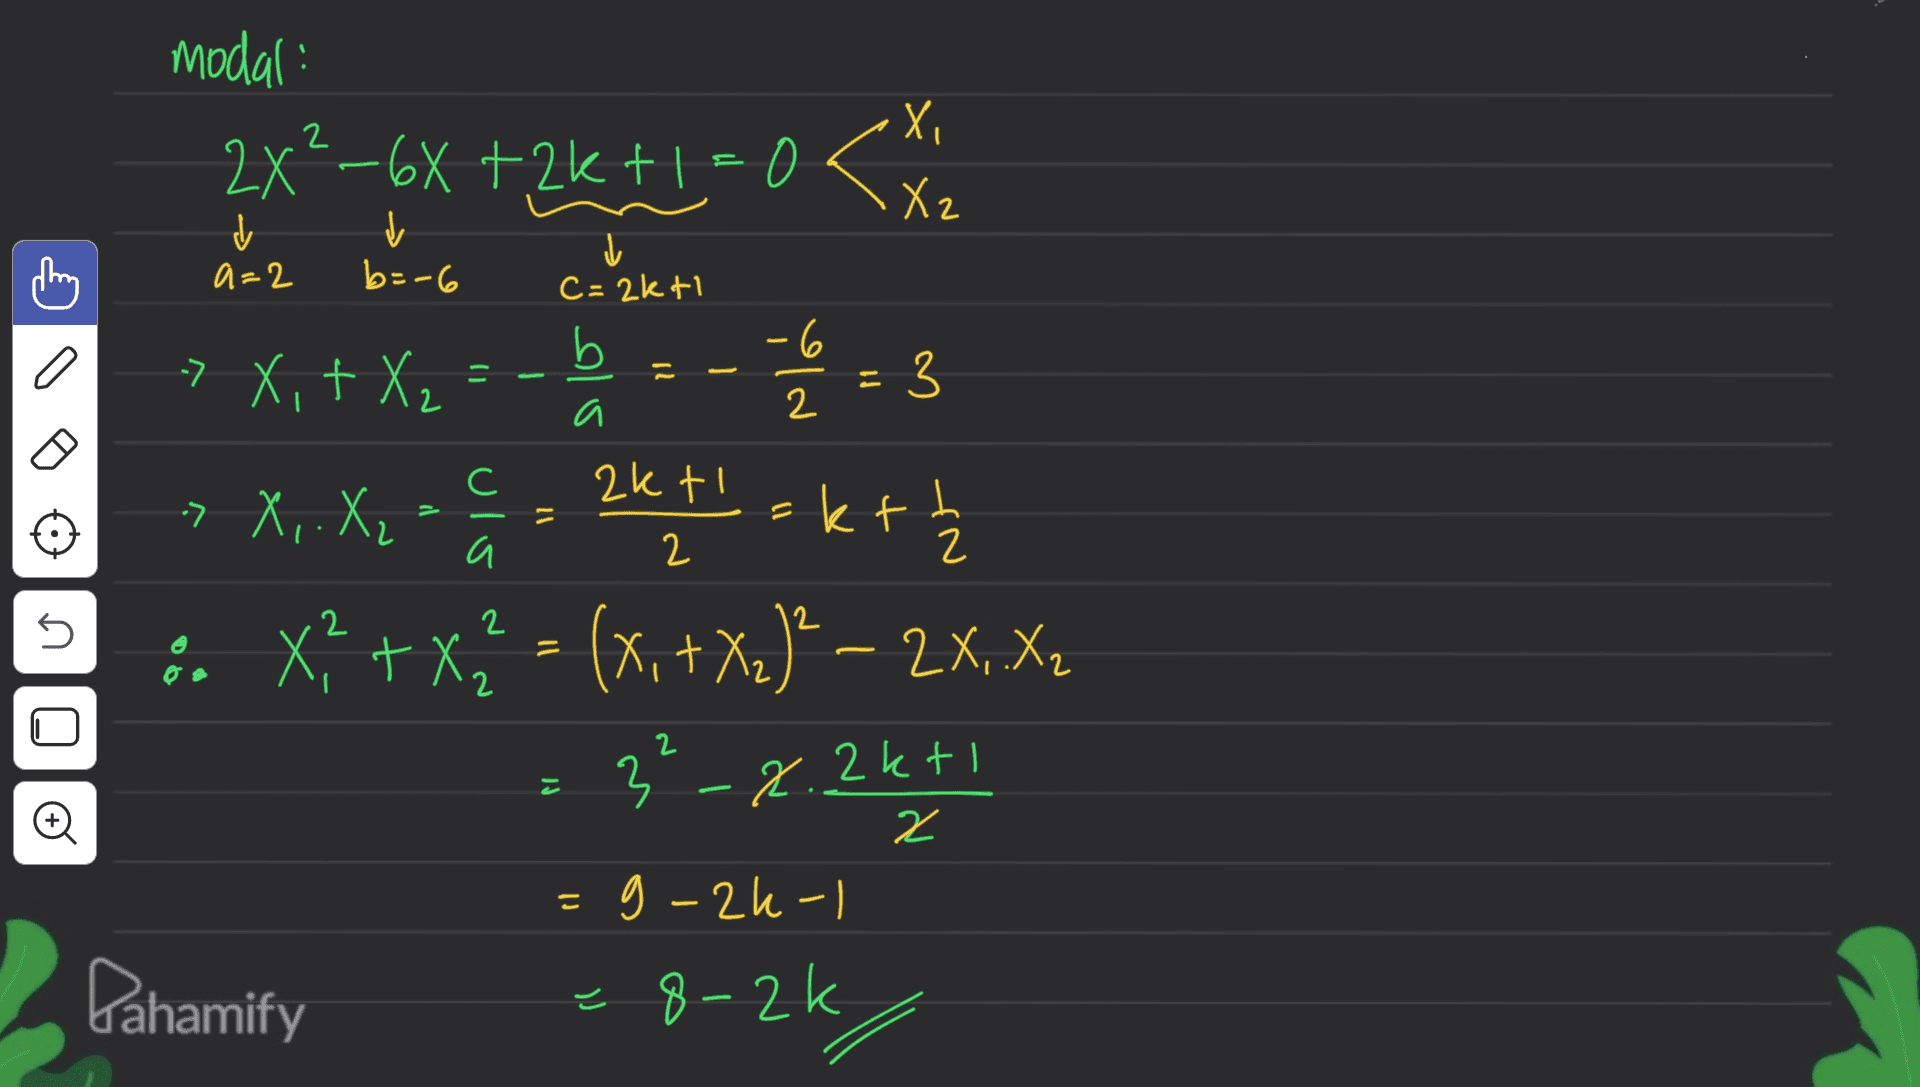 modal 2X²–6X +2k+1 = 0 < Х, X2 ✓ a=2 ✓ b=-6 į c=2kti b -6 a X+ = a 2 С » X,+ X2 =-=-= 3 ktokt :. x + x1 = (x, + X.)" – 2X, X (+ » X,. X₂ ulo 11 akti 2 h 2 2 ni 2 = X2 3-2.2kti o 2 こ g-2k-1 Pahamify -8-2k 